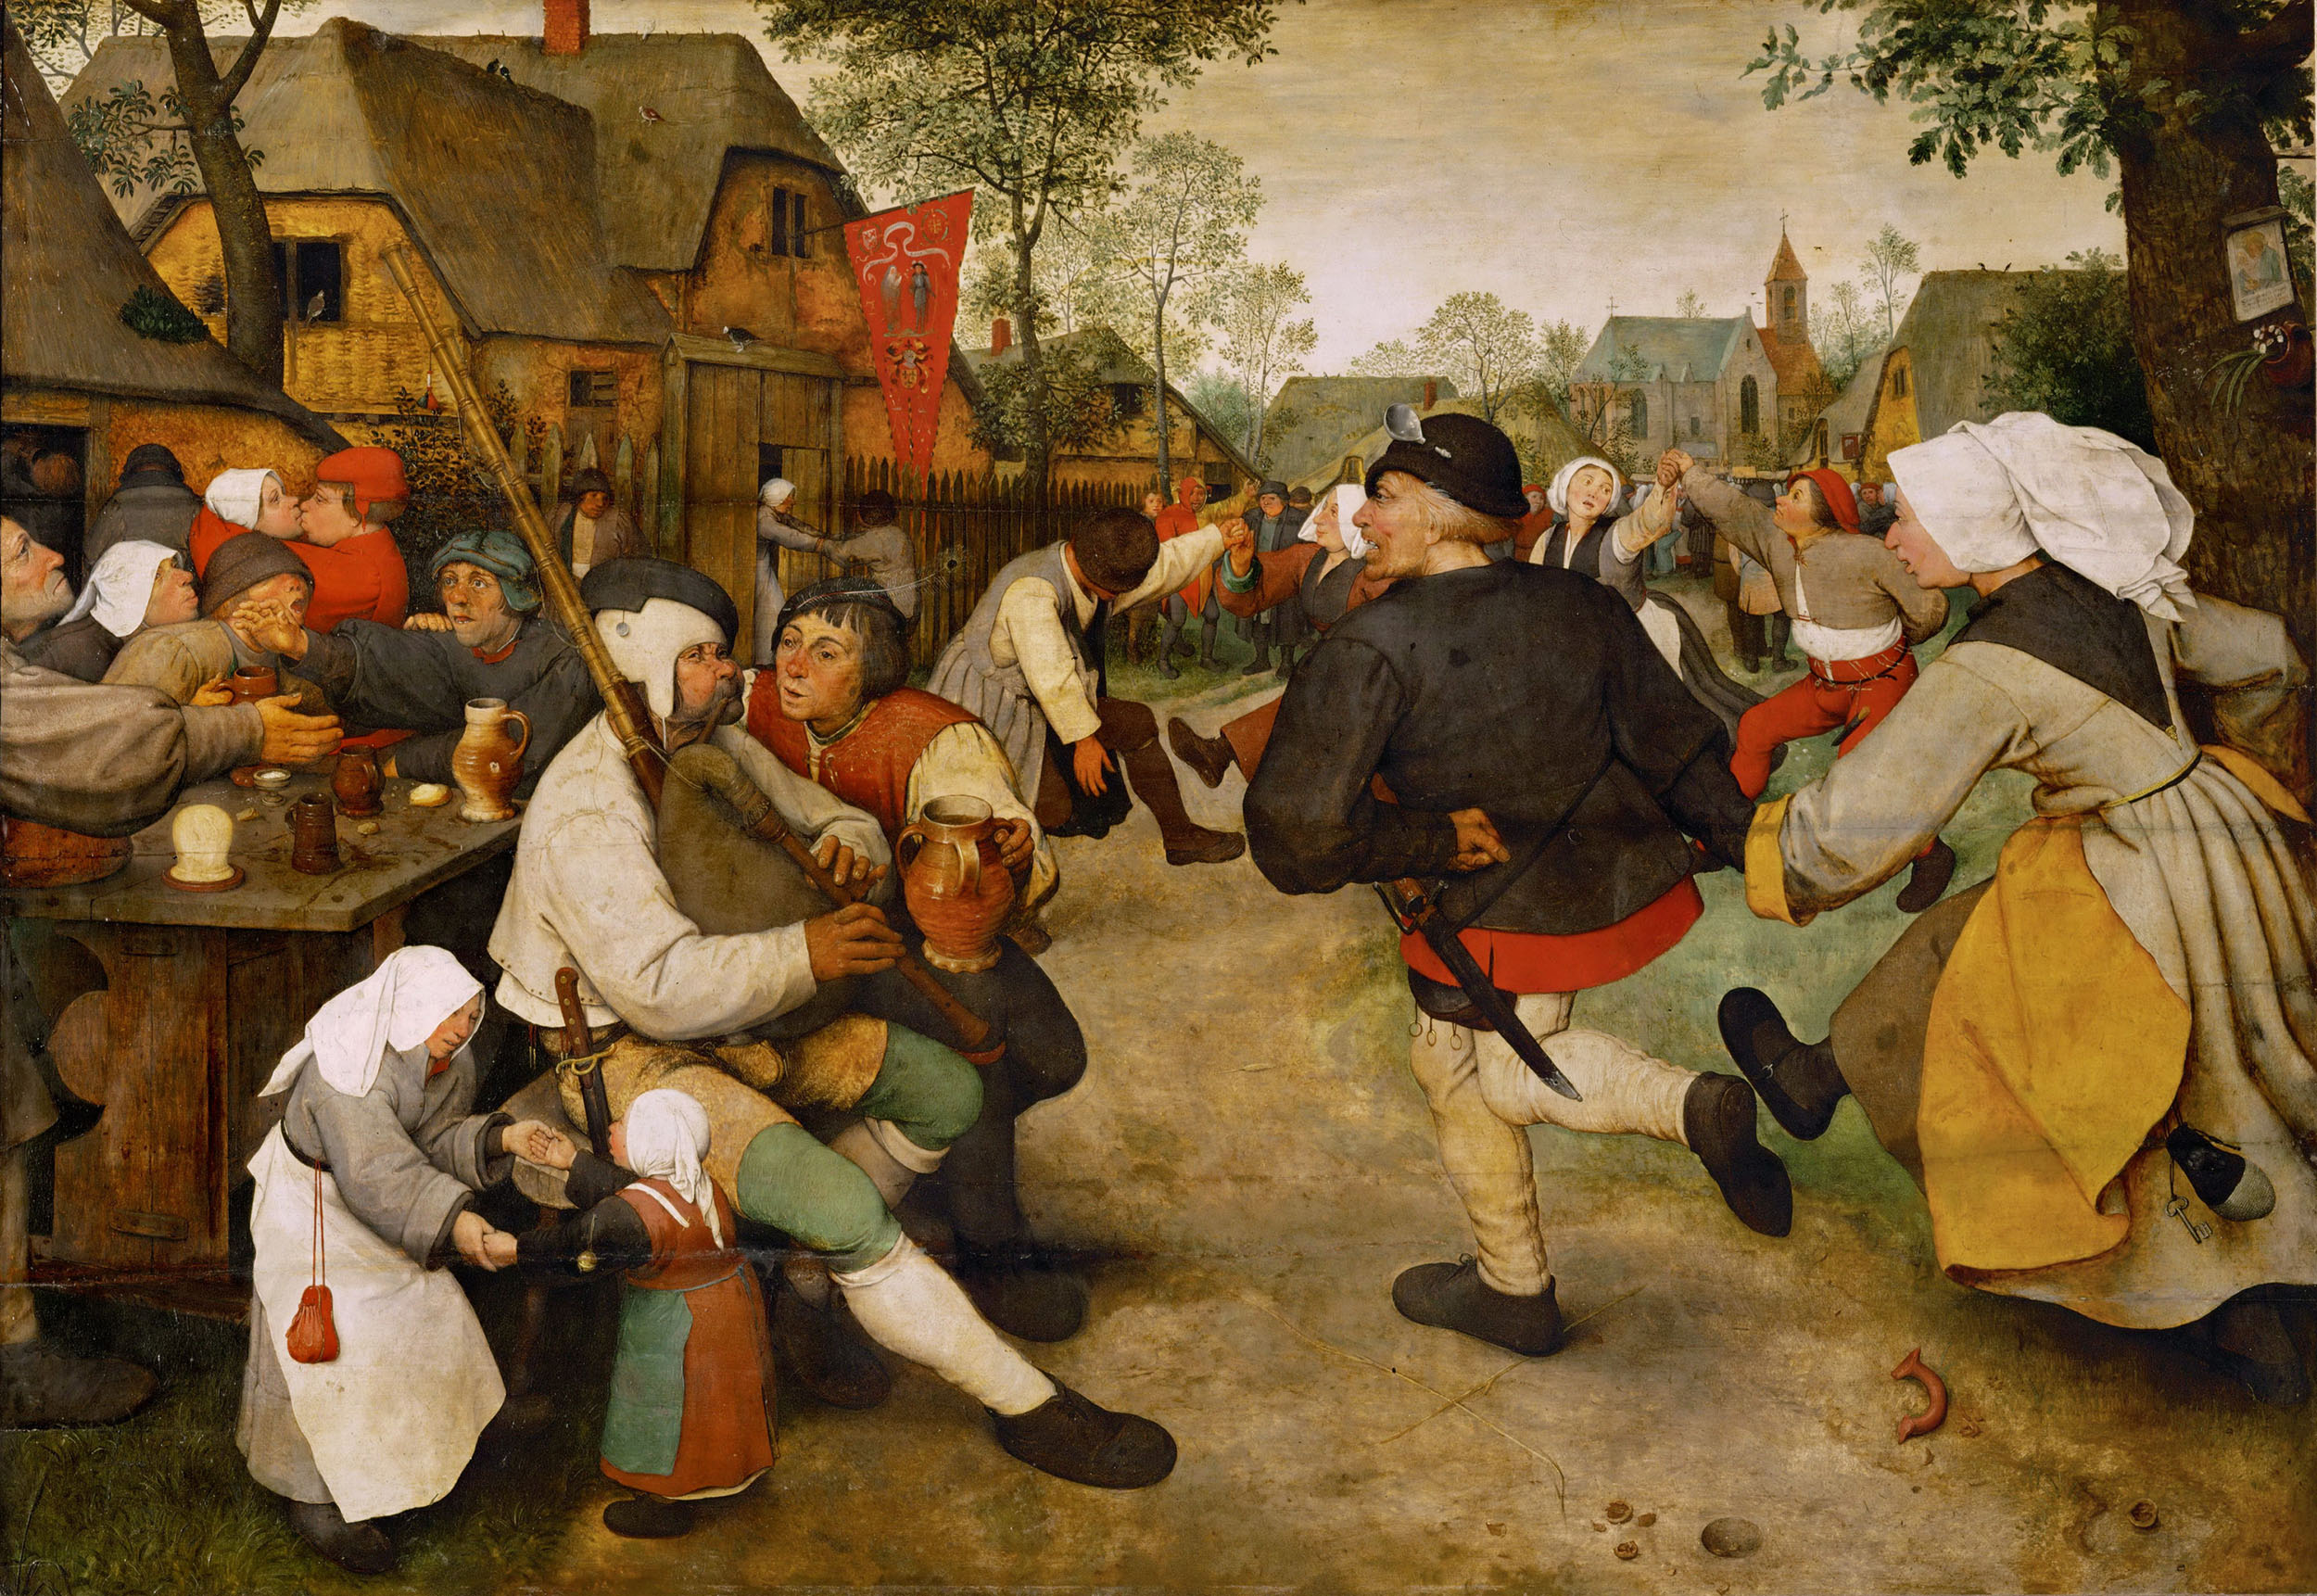 Питер Брейгель Старший. "Крестьянский танец". 1567-1568.